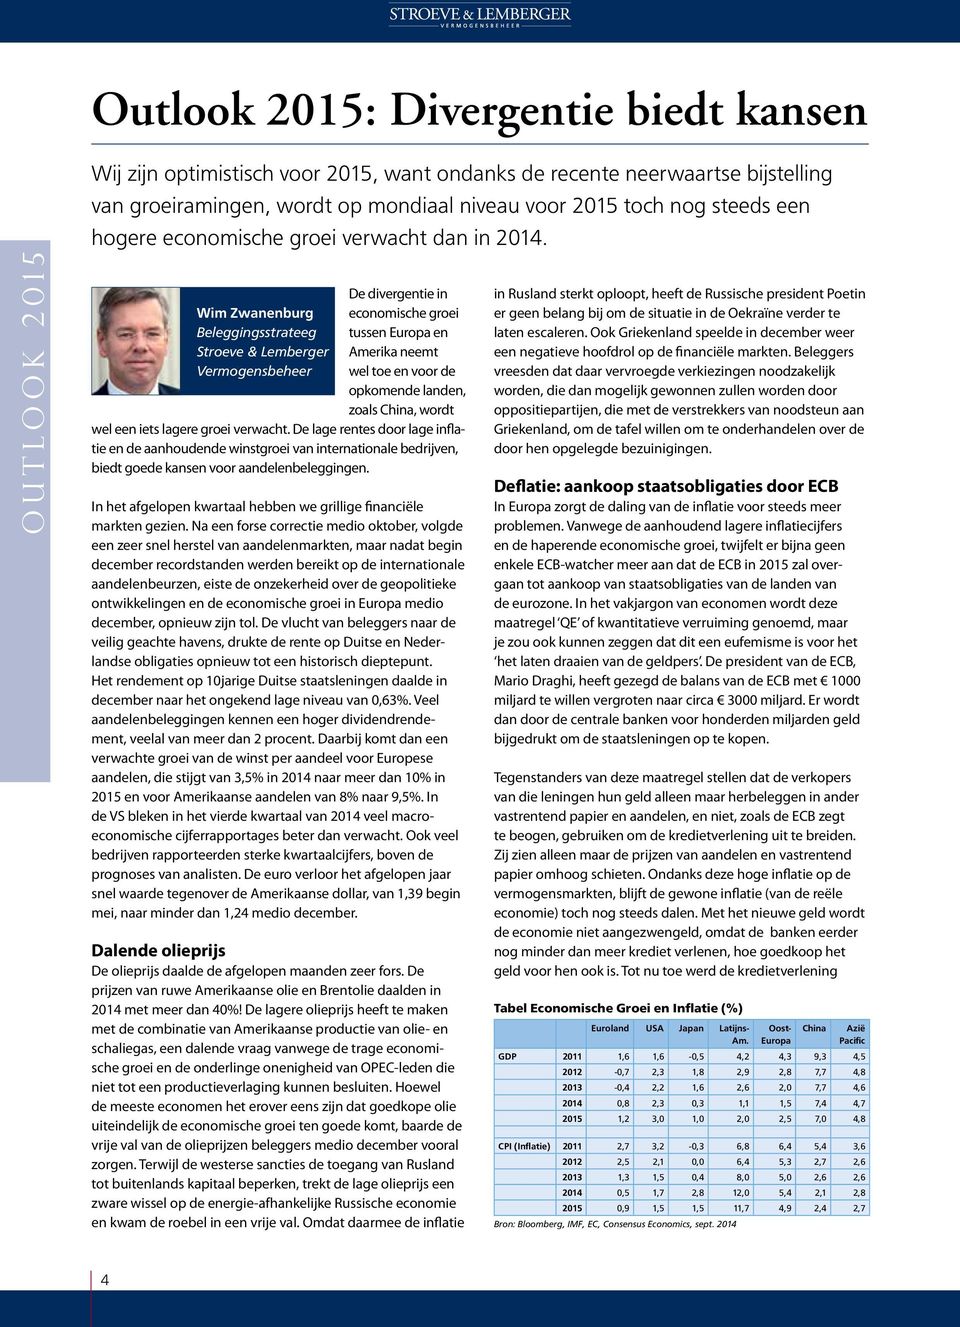 outlook 2015 Wim Zwanenburg Beleggingsstrateeg Stroeve & Lemberger Vermogensbeheer De divergentie in economische groei tussen Europa en Amerika neemt wel toe en voor de opkomende landen, zoals China,